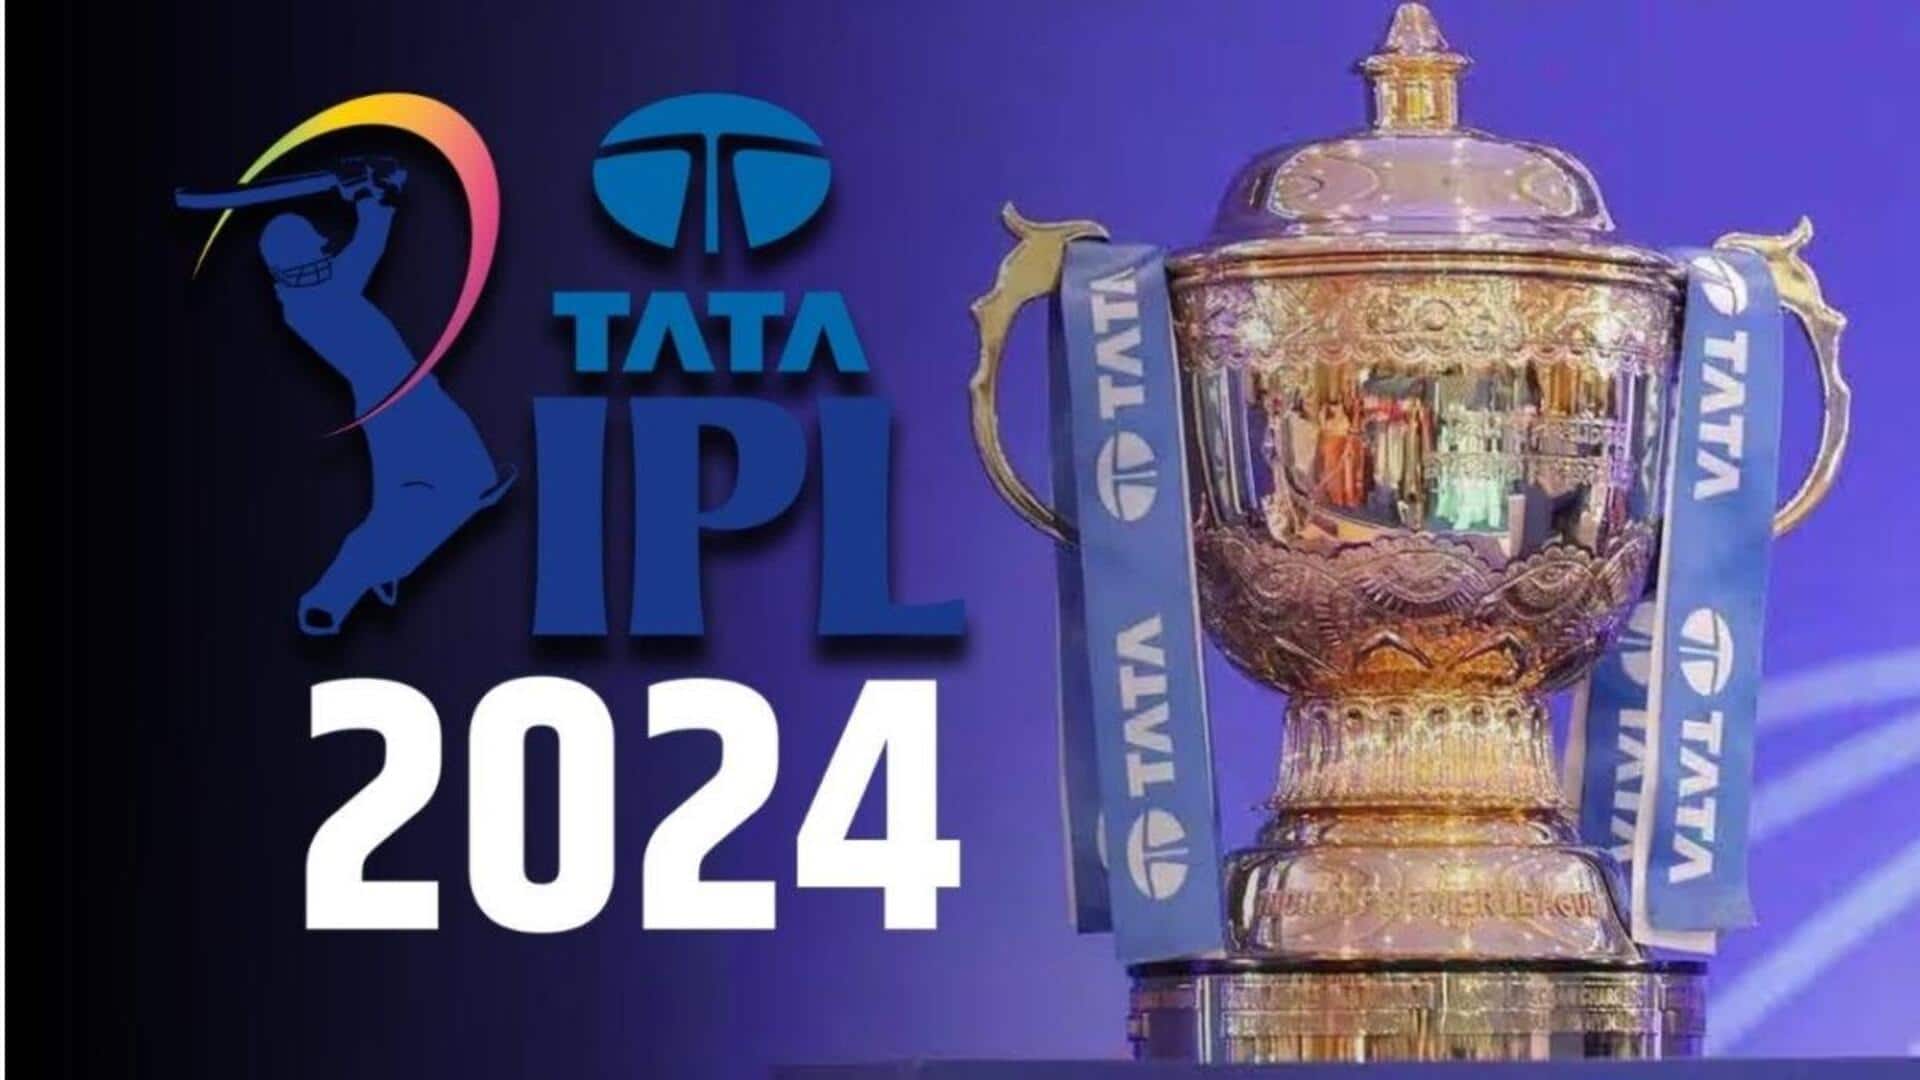 IPL 2024: ఐపీఎల్ 2024 షెడ్యూల్ విడుదల.. తొలి మ్యాచ్, ఇతర వివరాలు